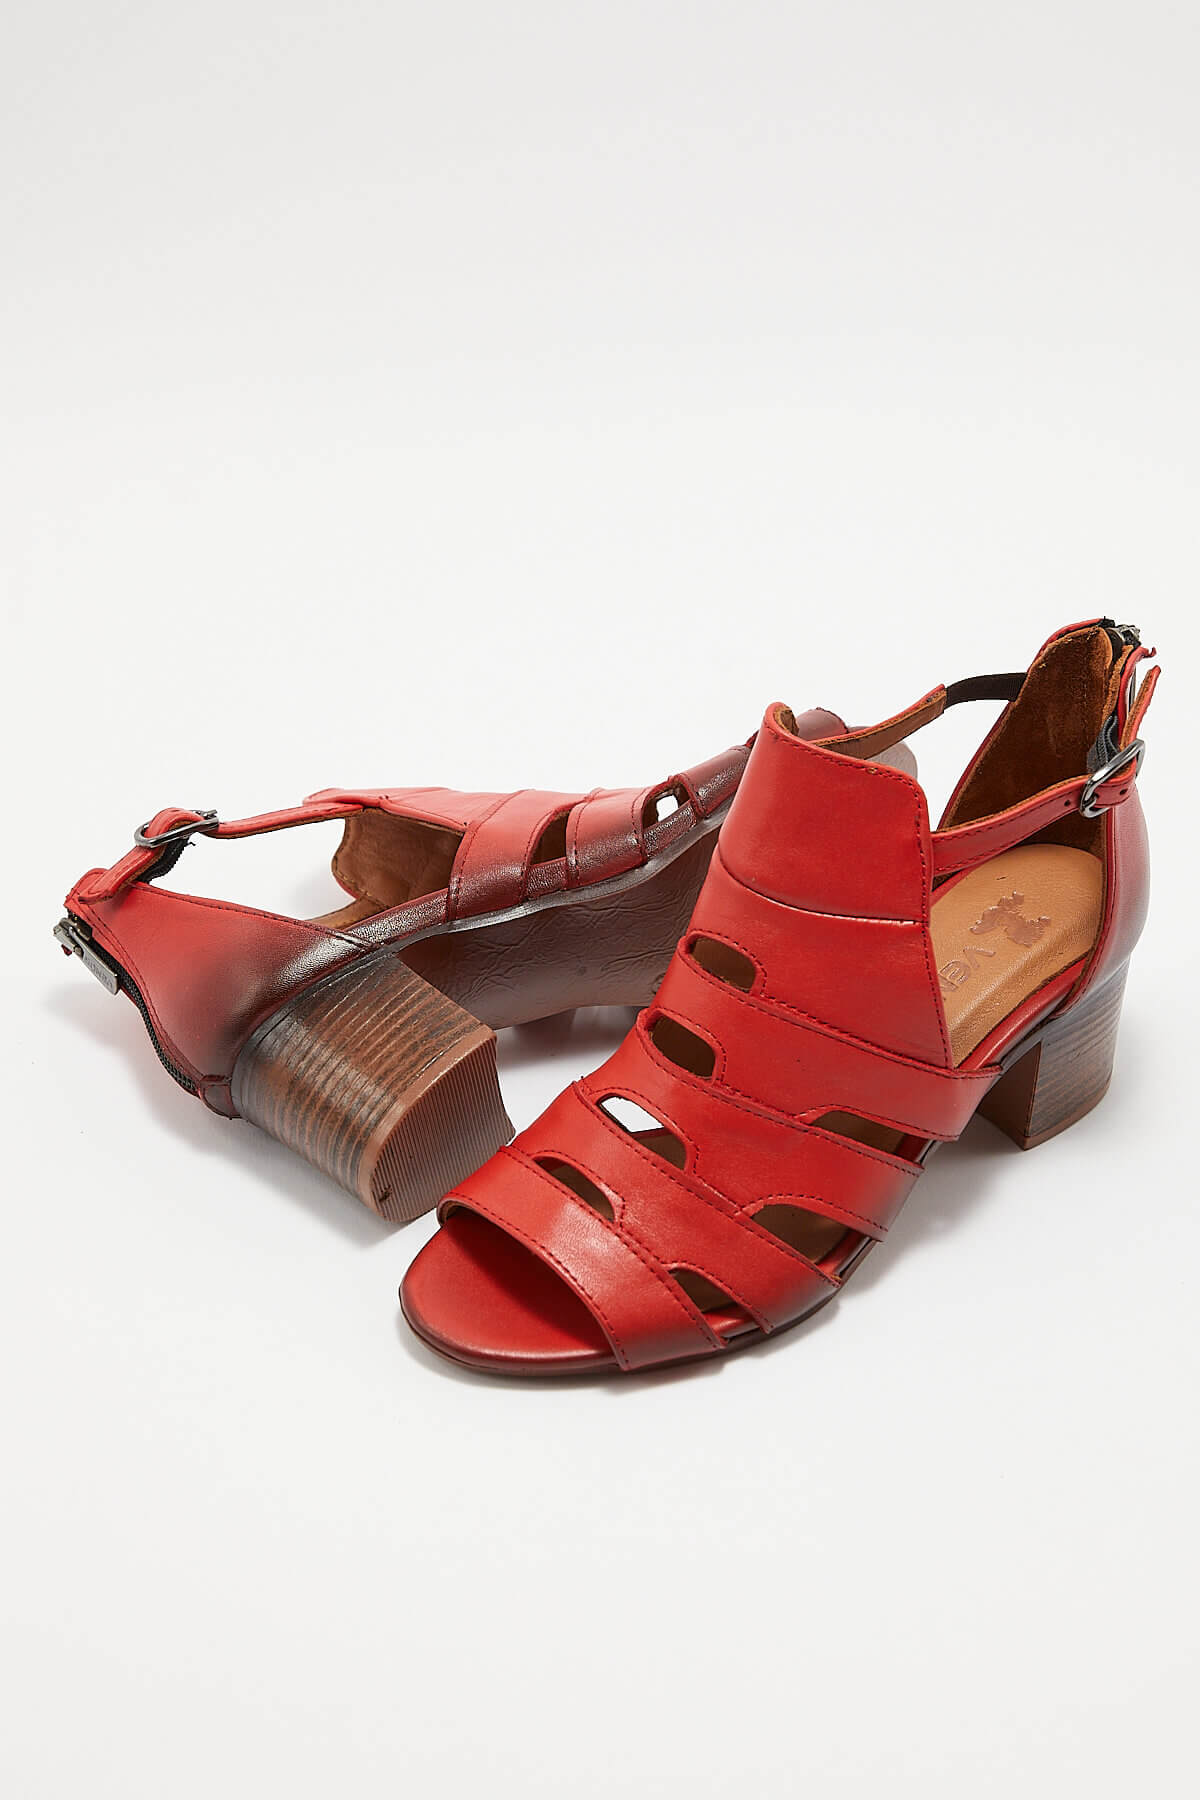 Kadın Topuklu Deri Sandalet Kırmızı 1857211Y - Thumbnail